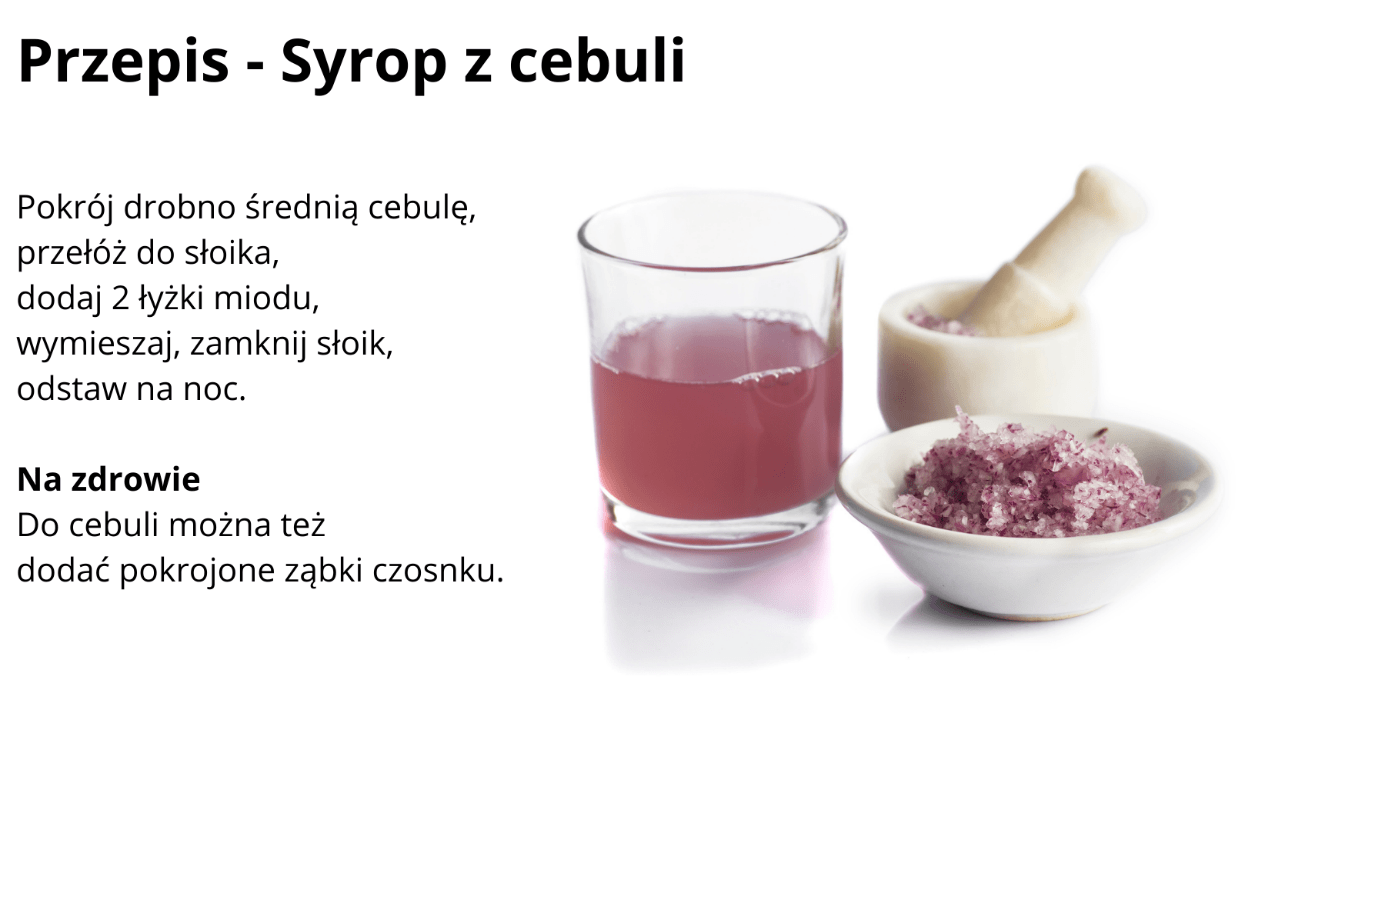 Przepis na syrop z cebuli